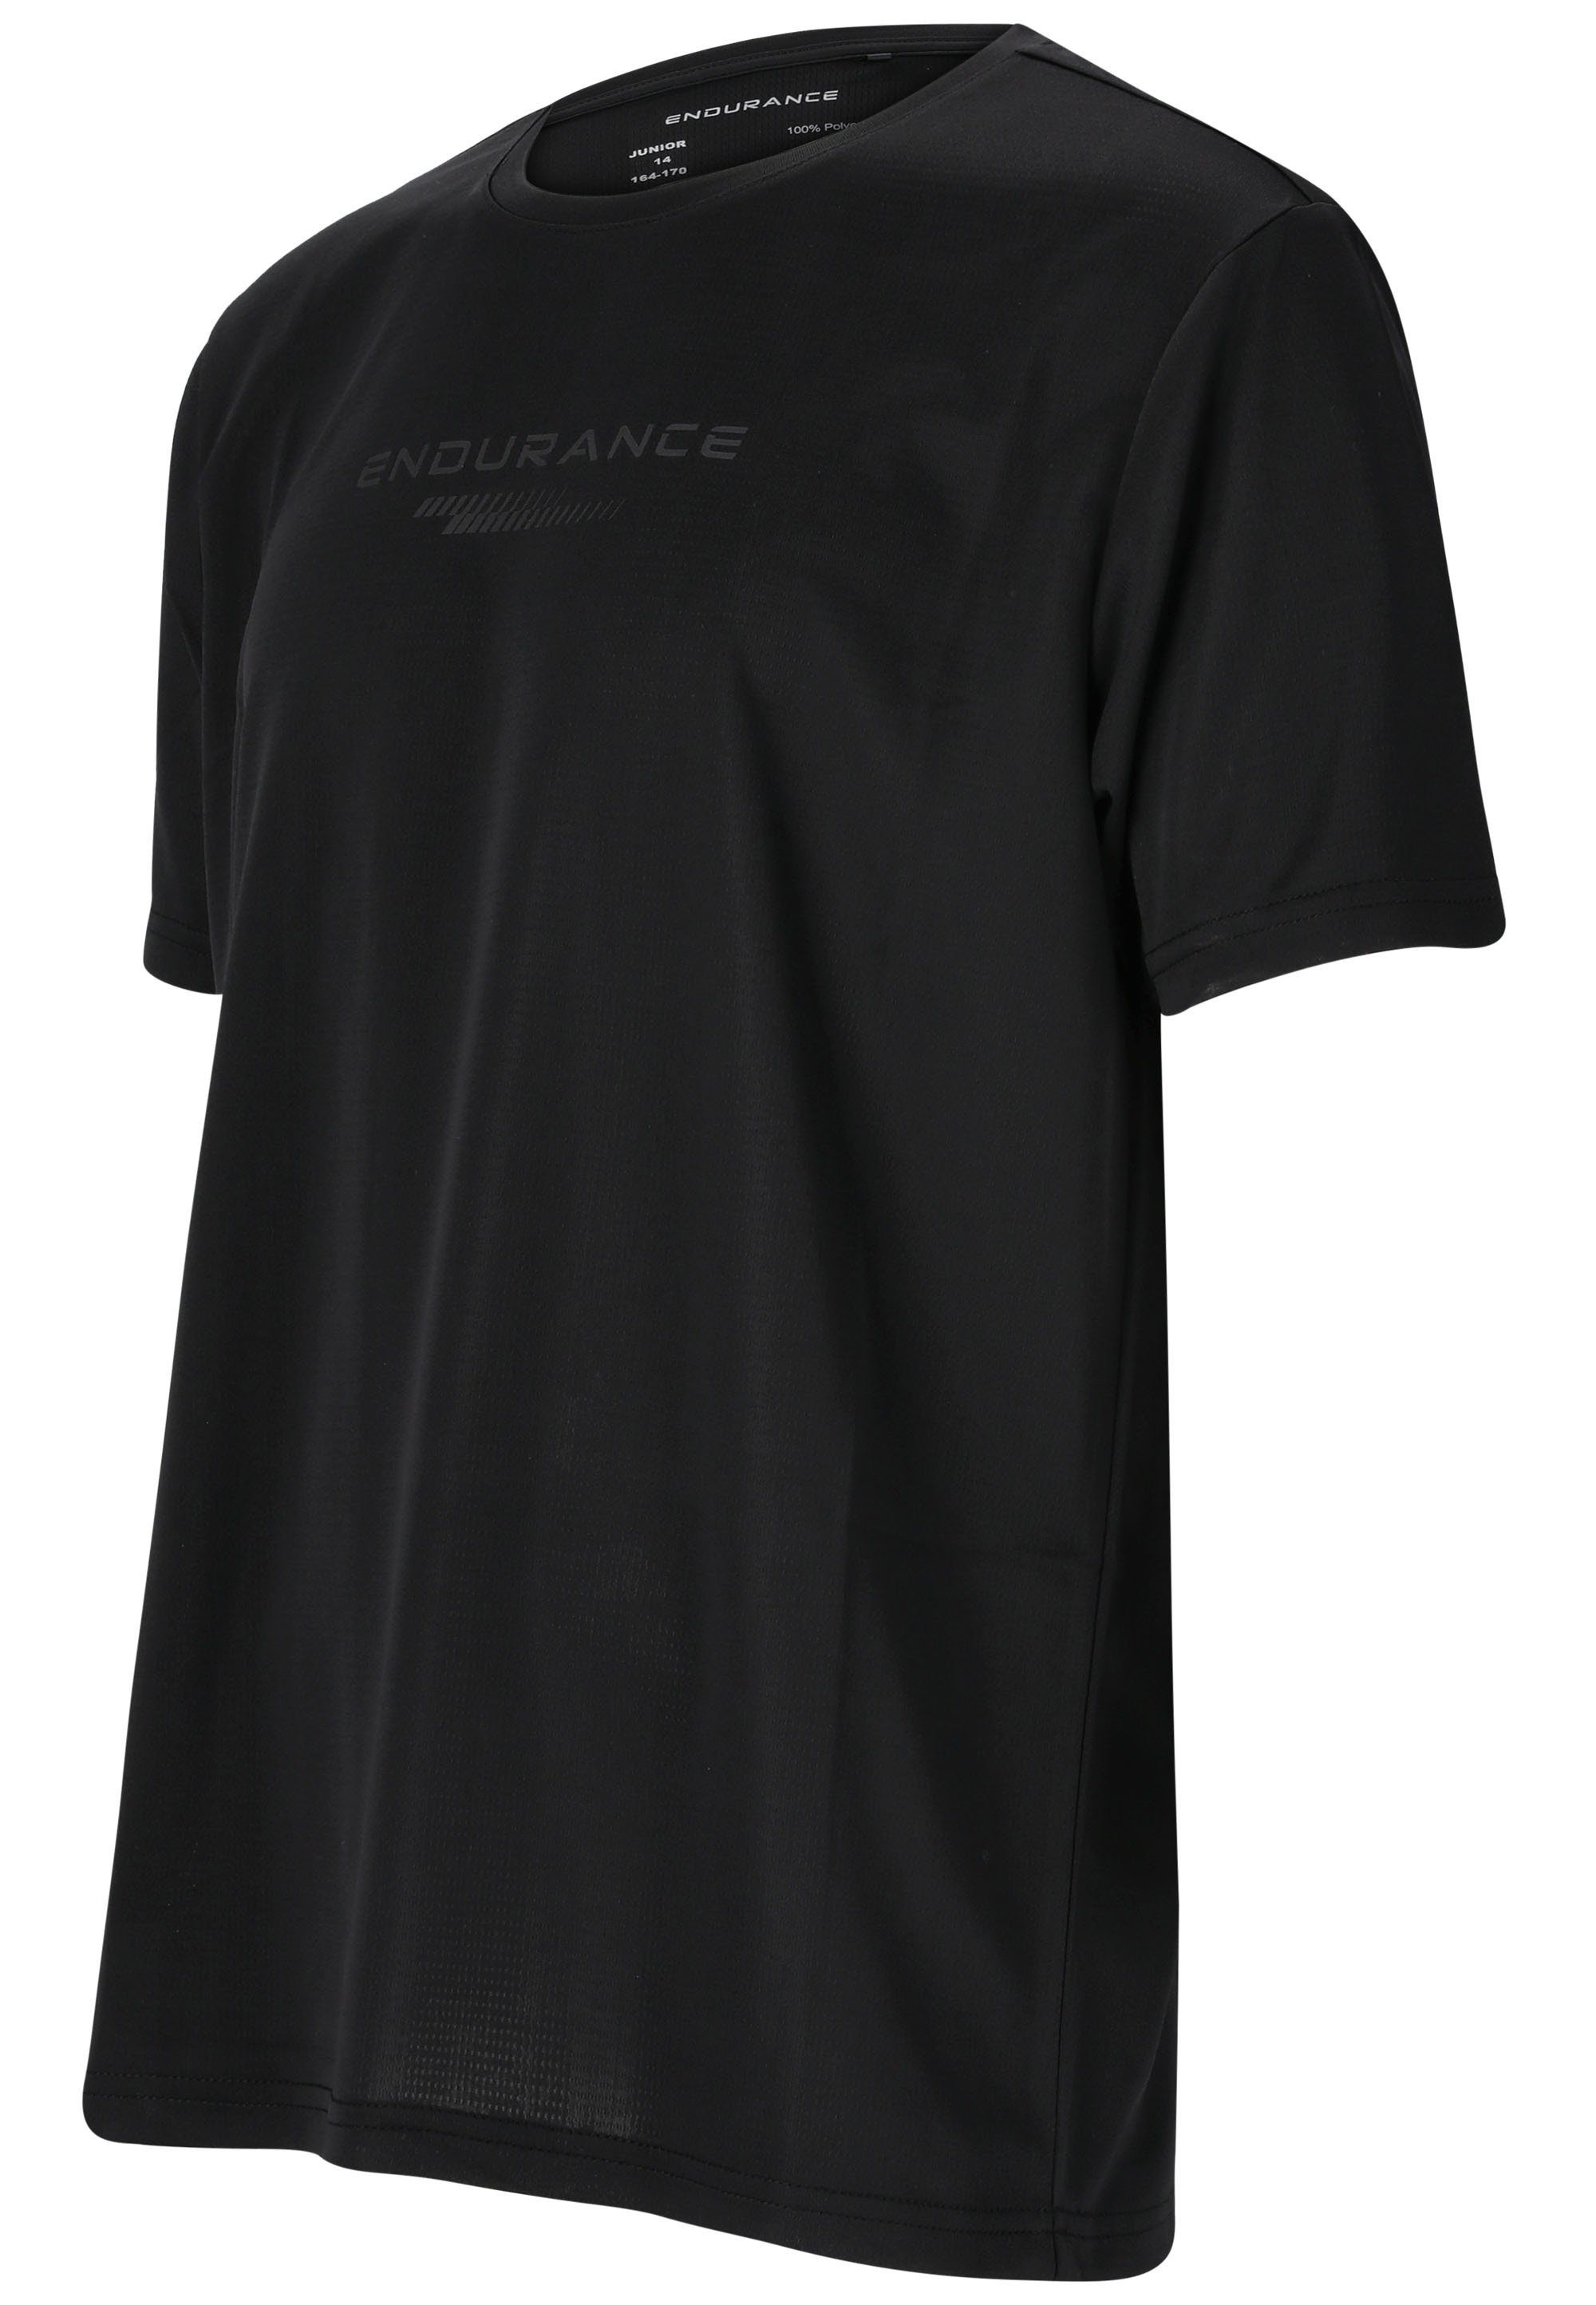 Quick mit ENDURANCE T-Shirt schwarz praktischer Dry-Technologie Dipat